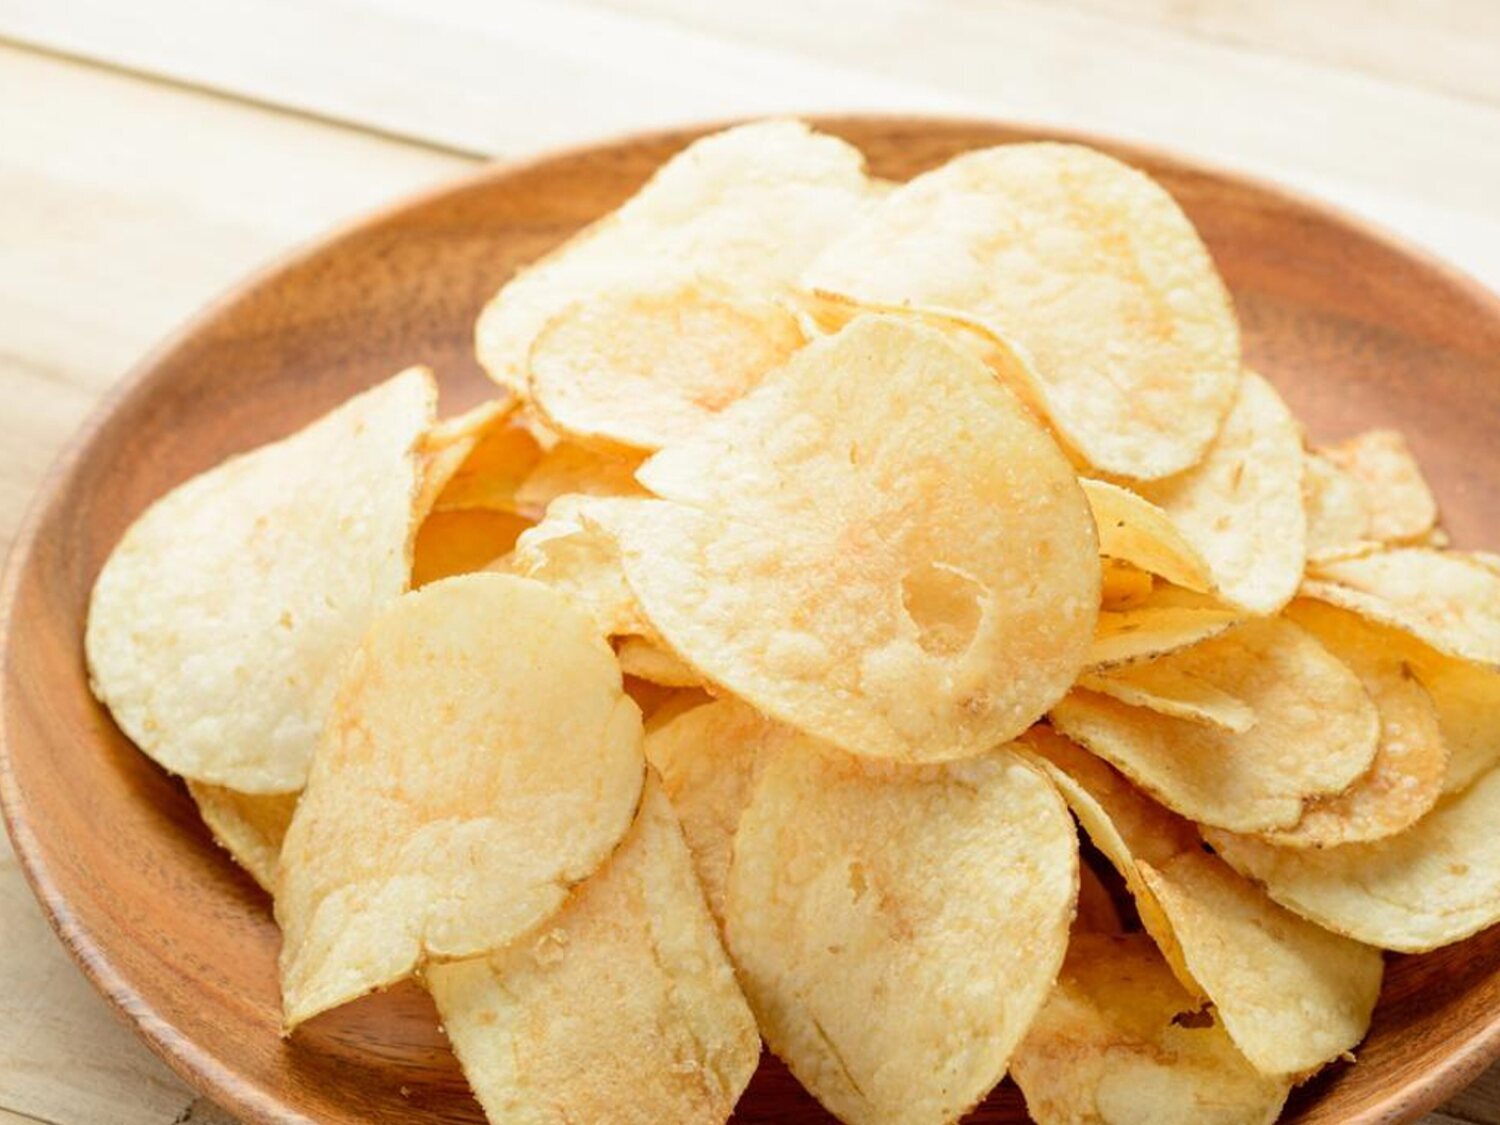 Alerta alimentaria: Sanidad advierte de la presencia de alégrenos no declarados en estas patatas Lay's